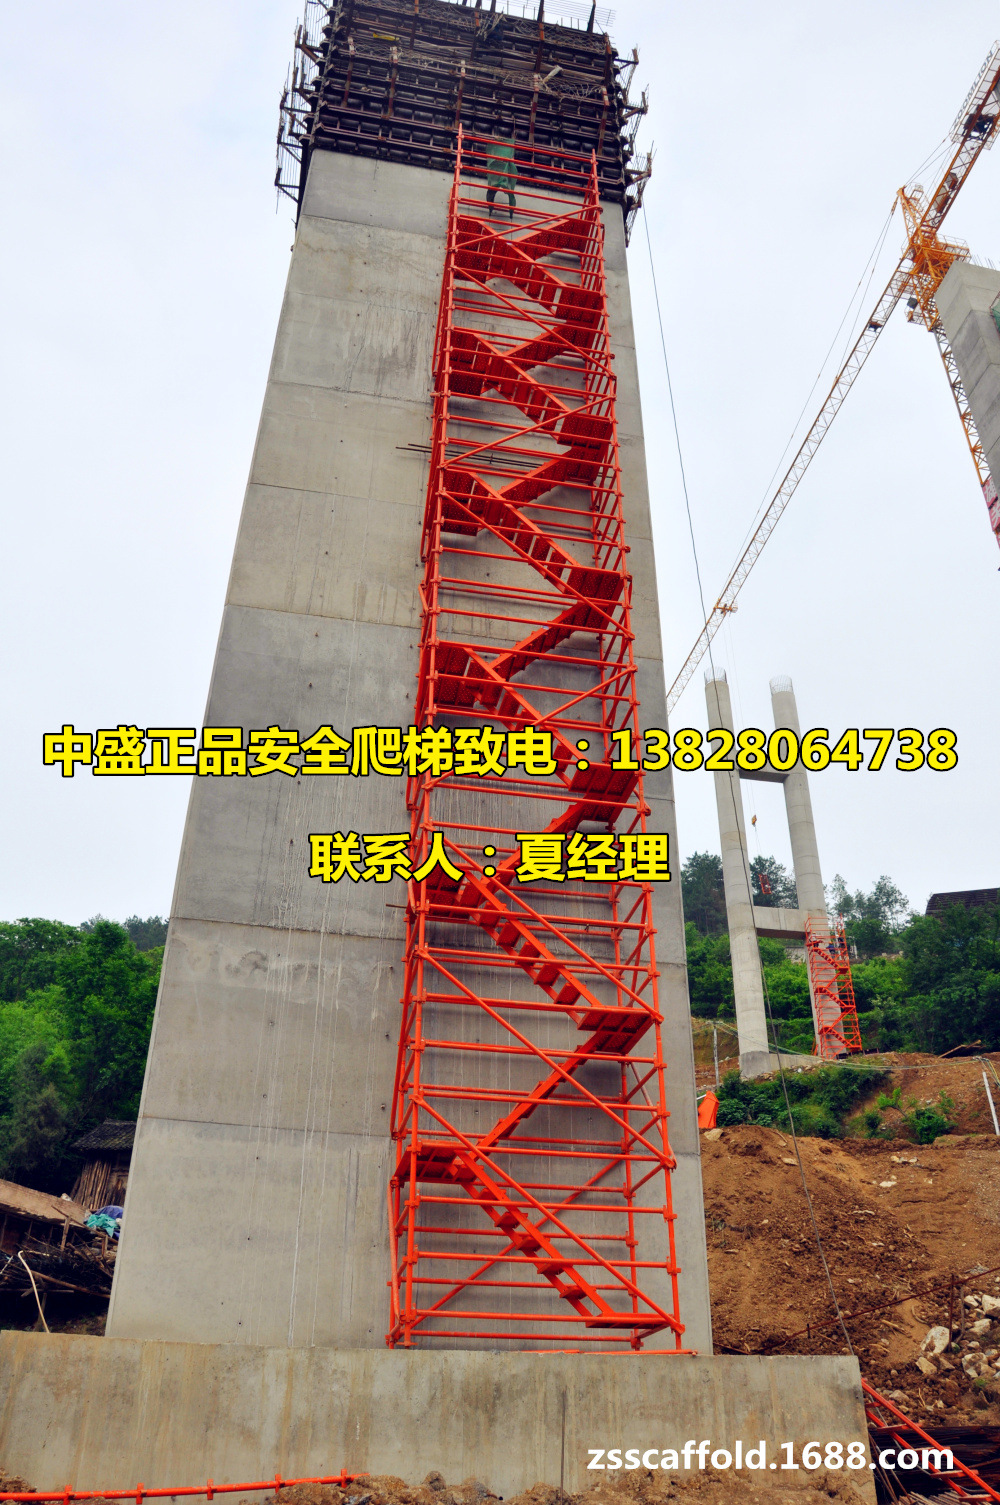 安全爬梯 桥梁施工安全检查专用 国际权威认证 保质保量 施工安全